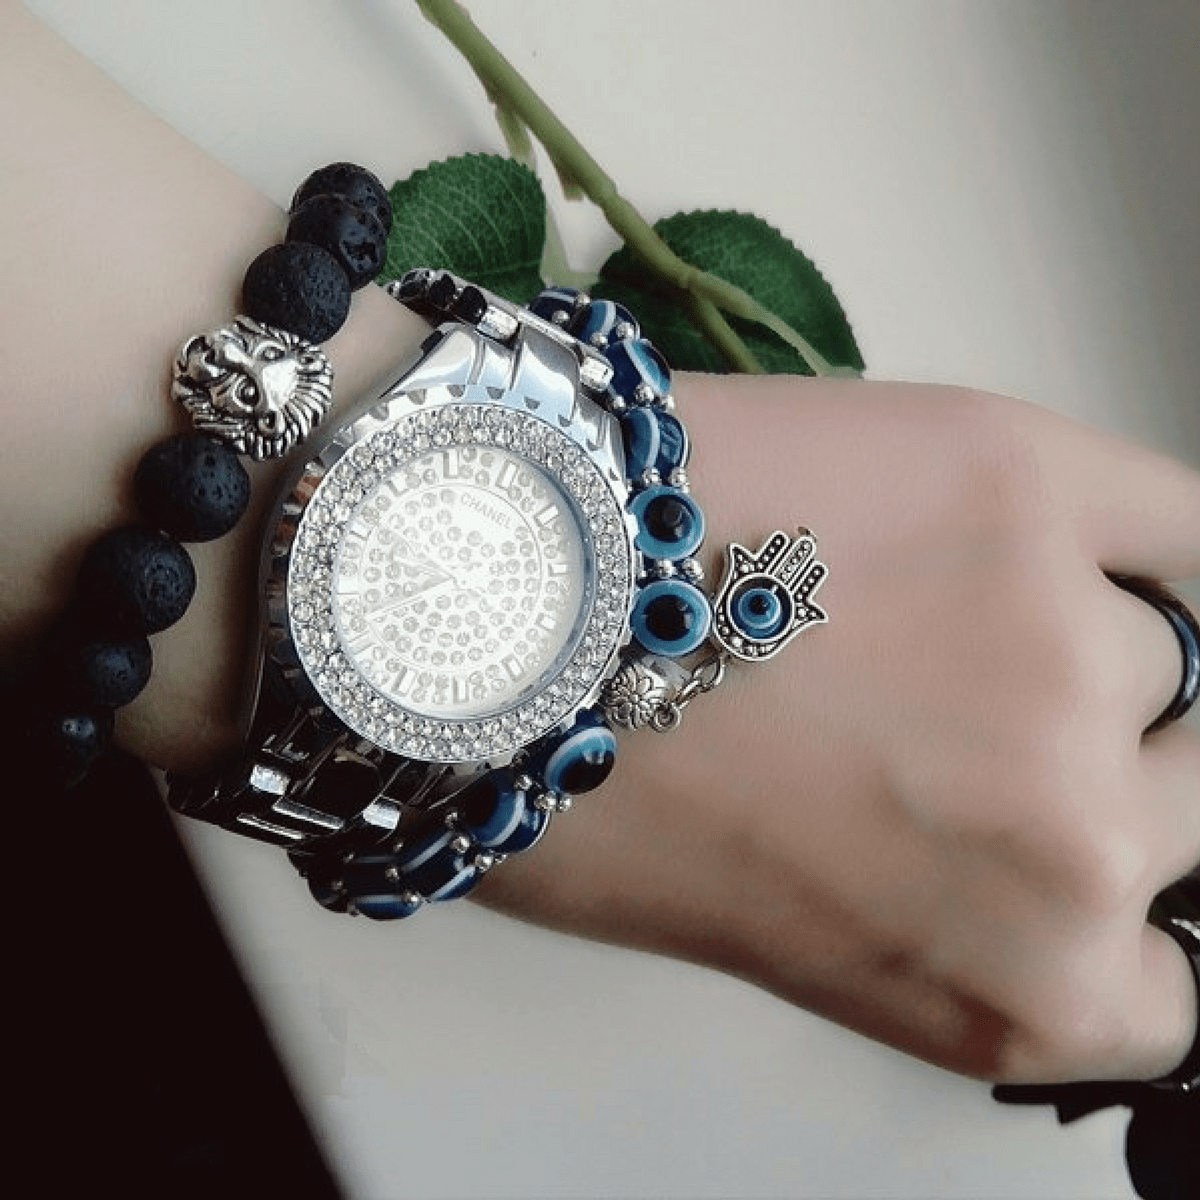 Handmade Evil Eye Glass Beads Hamsa Charm Bracelet Bracelet